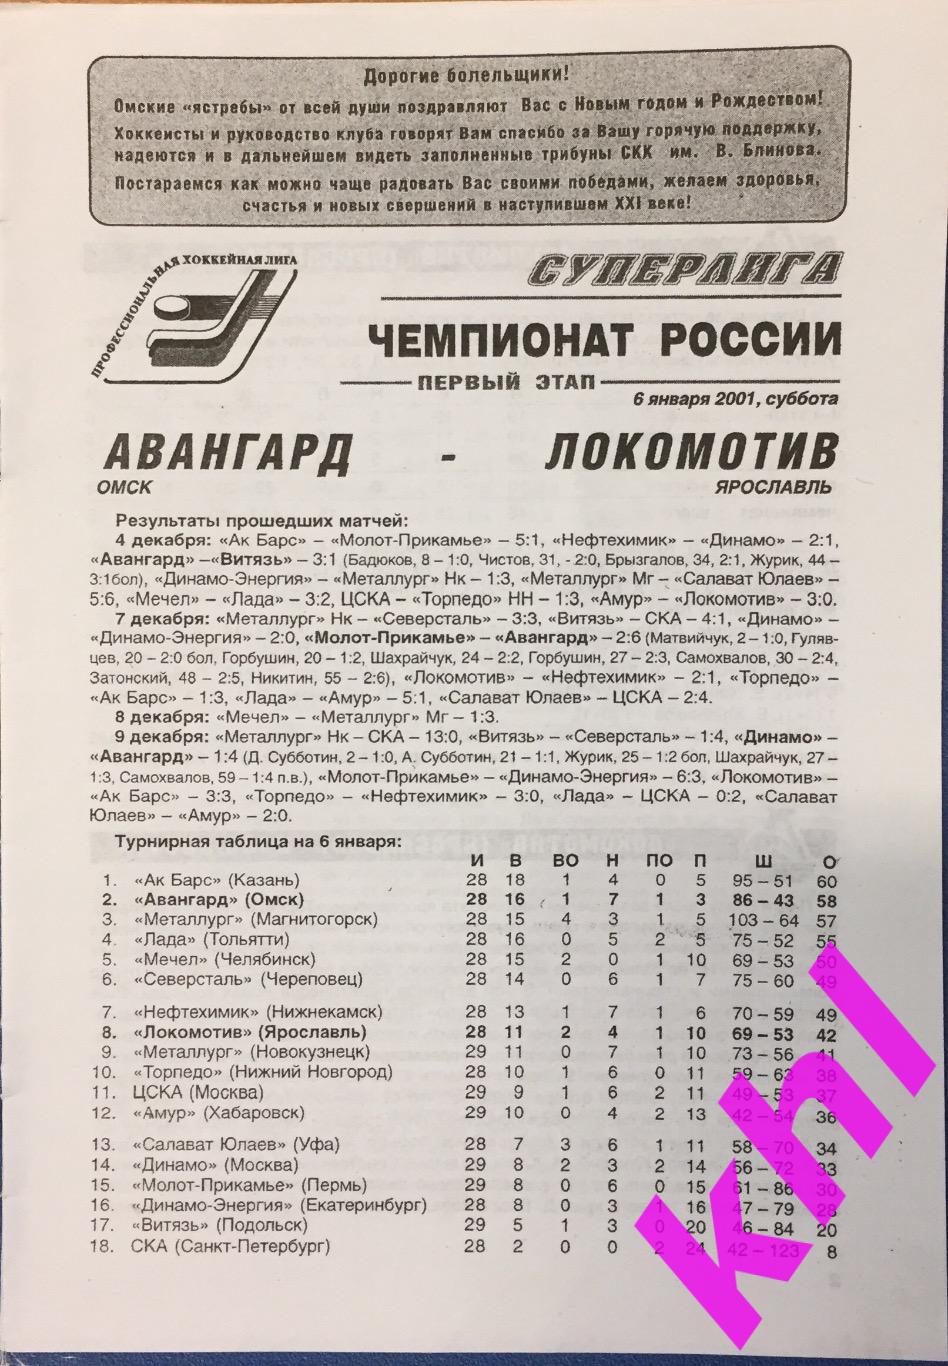 Авангард Омск - Локомотив Ярославль 6 января 2001 1